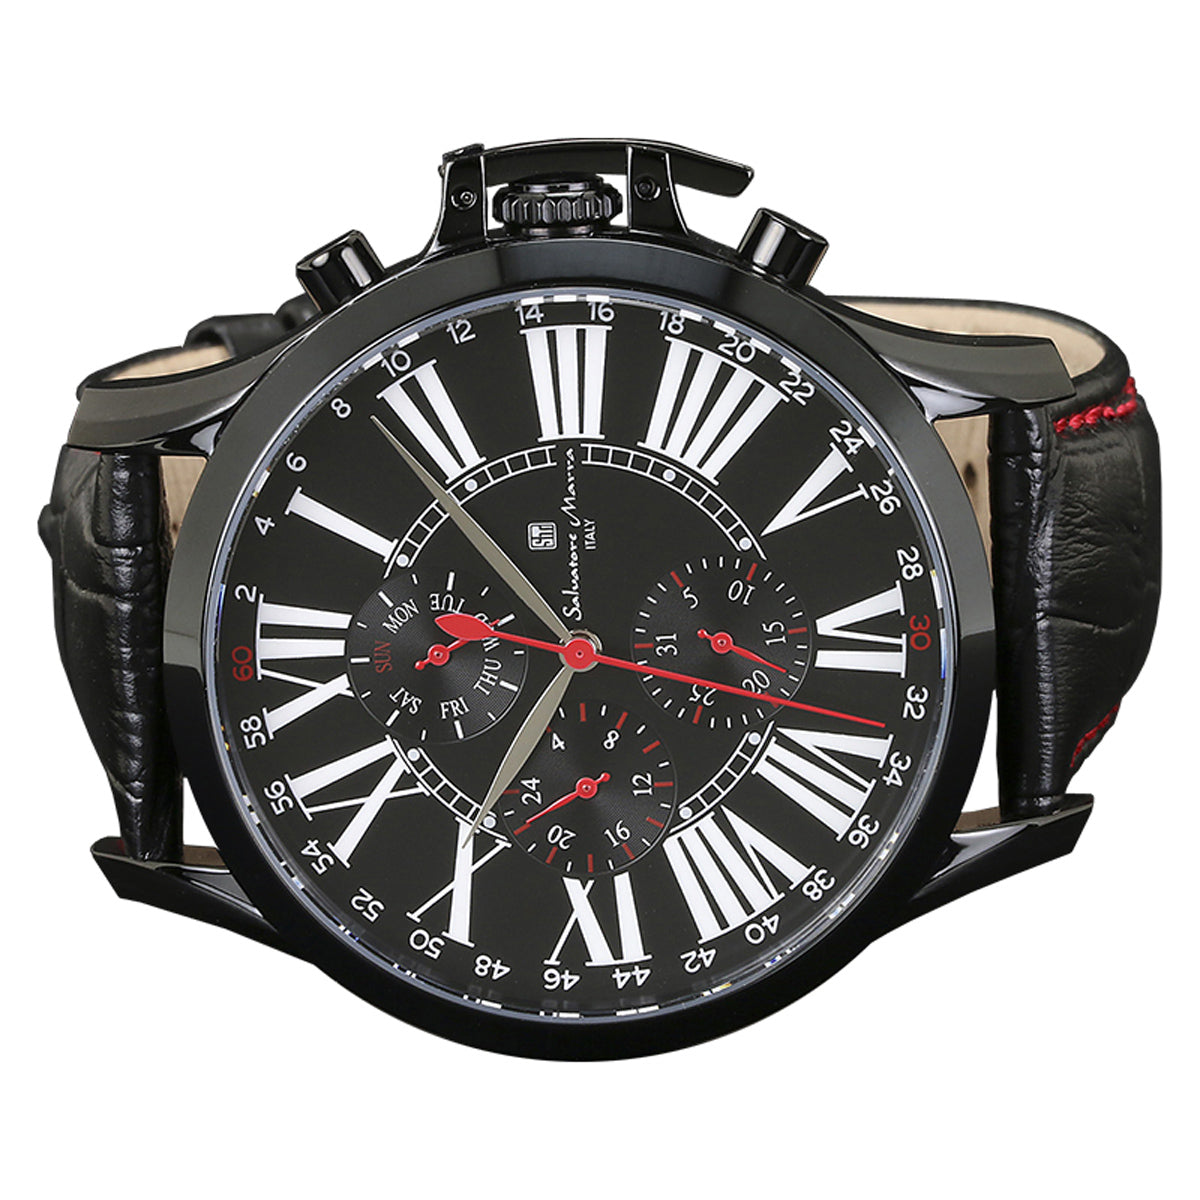 サルバトーレマーラ Salavatore Marra 腕時計 SM14123-IPBK クオーツ